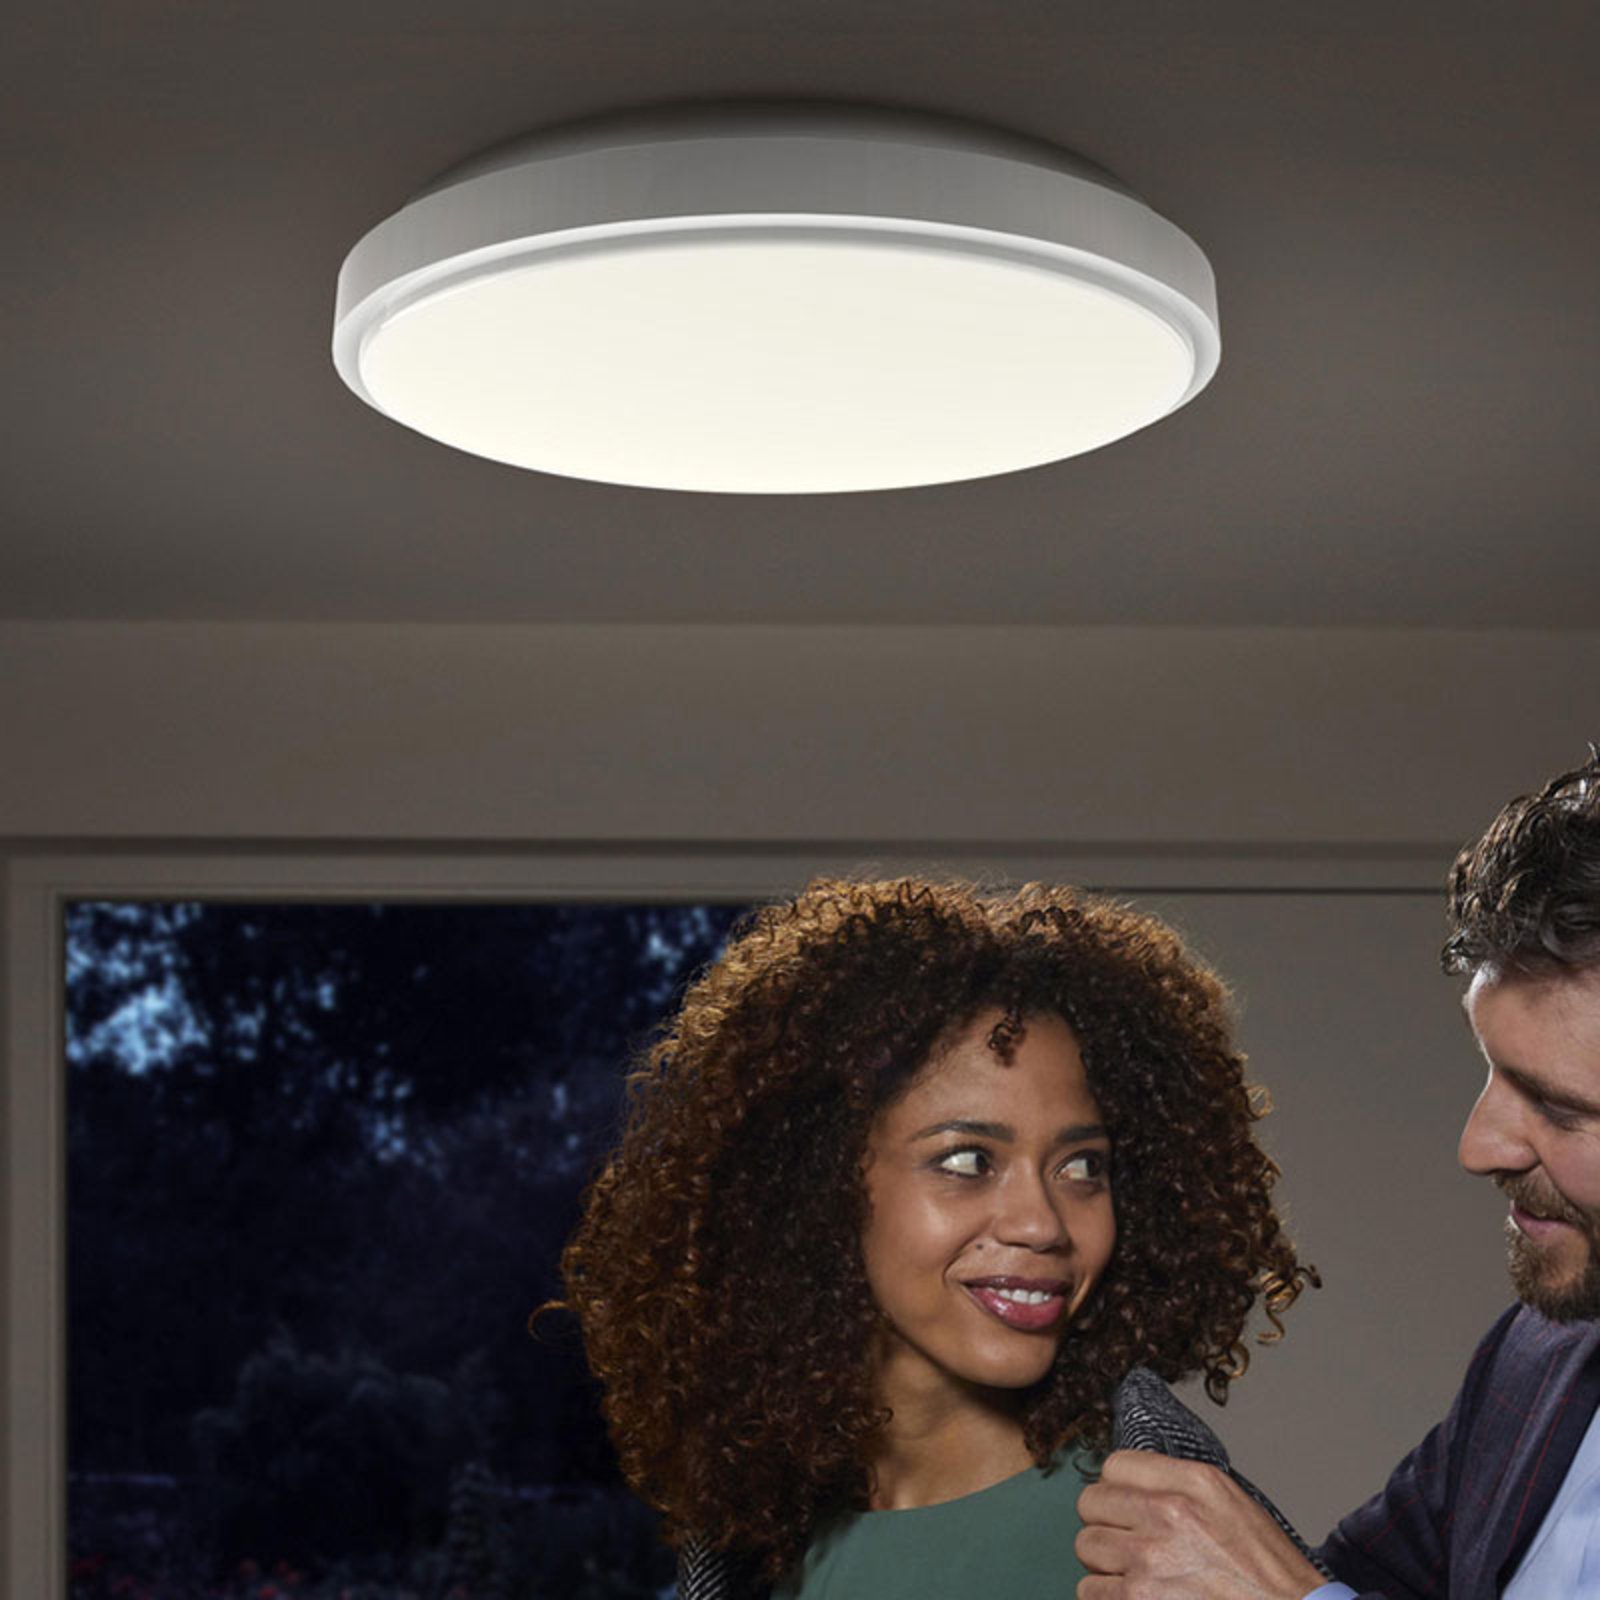 Ledvance Orbis sensor LED ceiling lamp Ø 33.5 cm